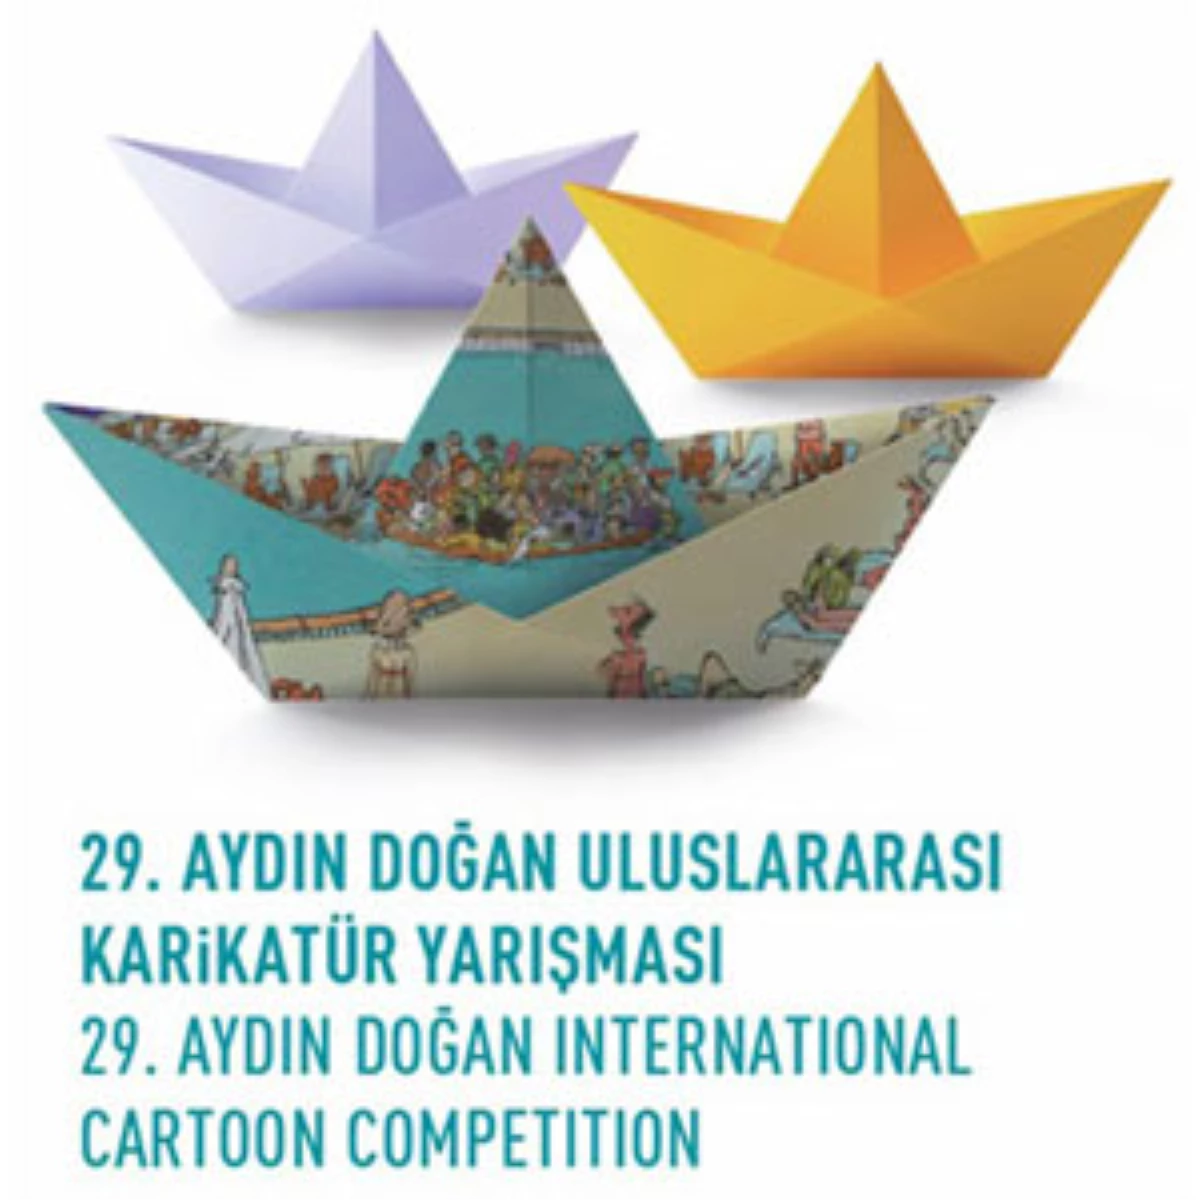 29. Aydın Doğan Uluslararası Karikatür Yarışması